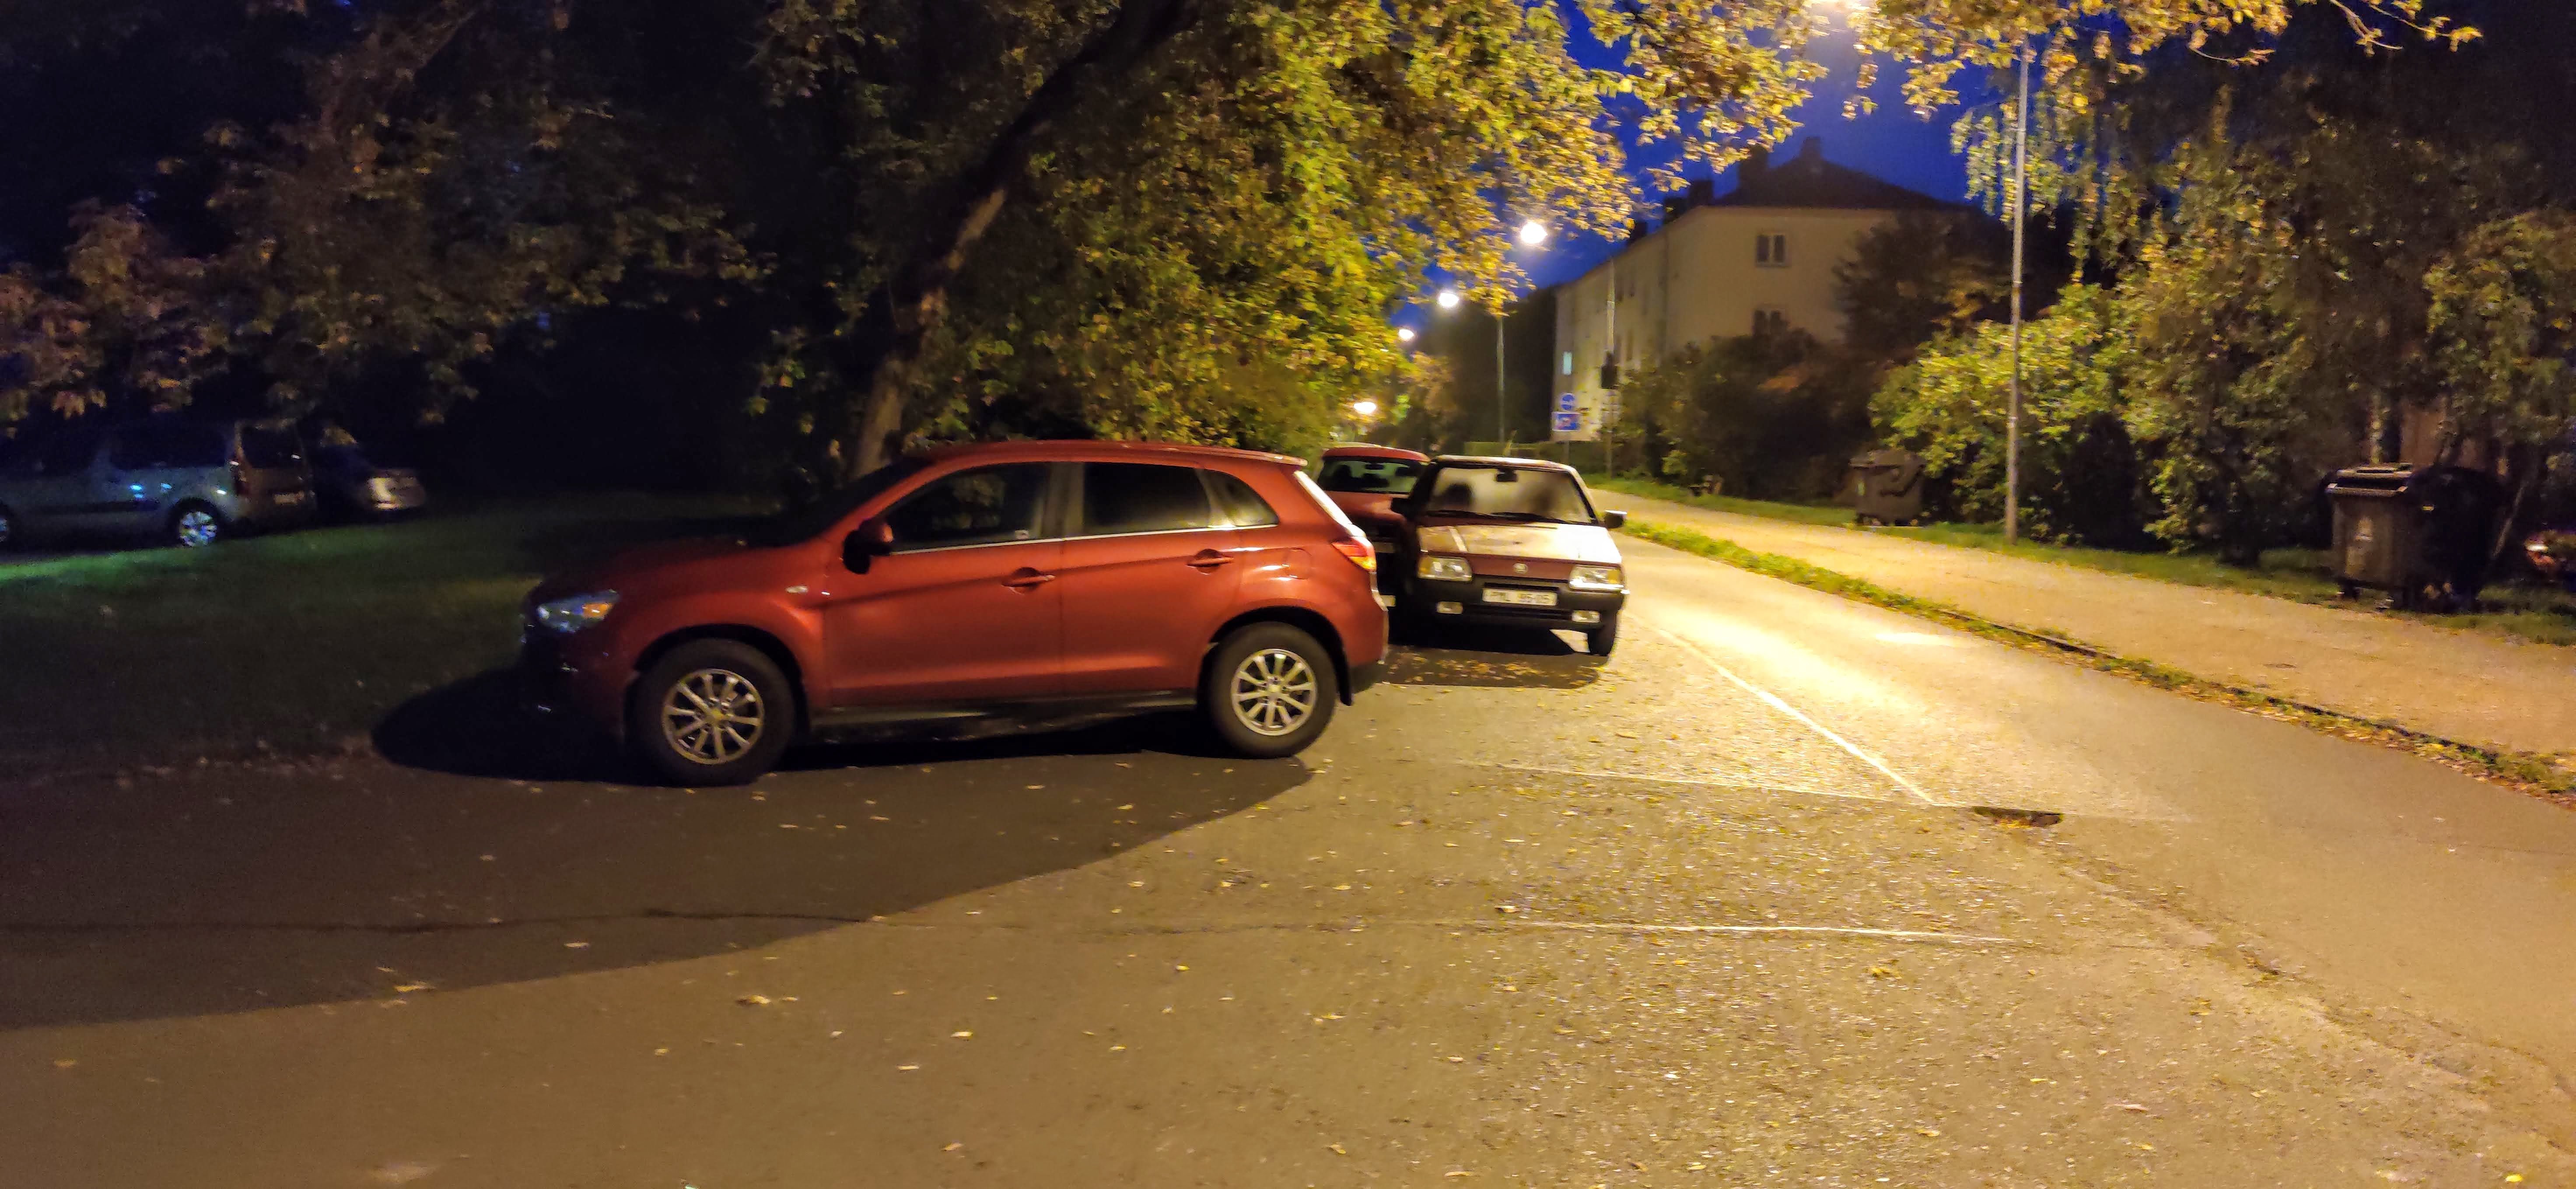 Parkování v křižovatce